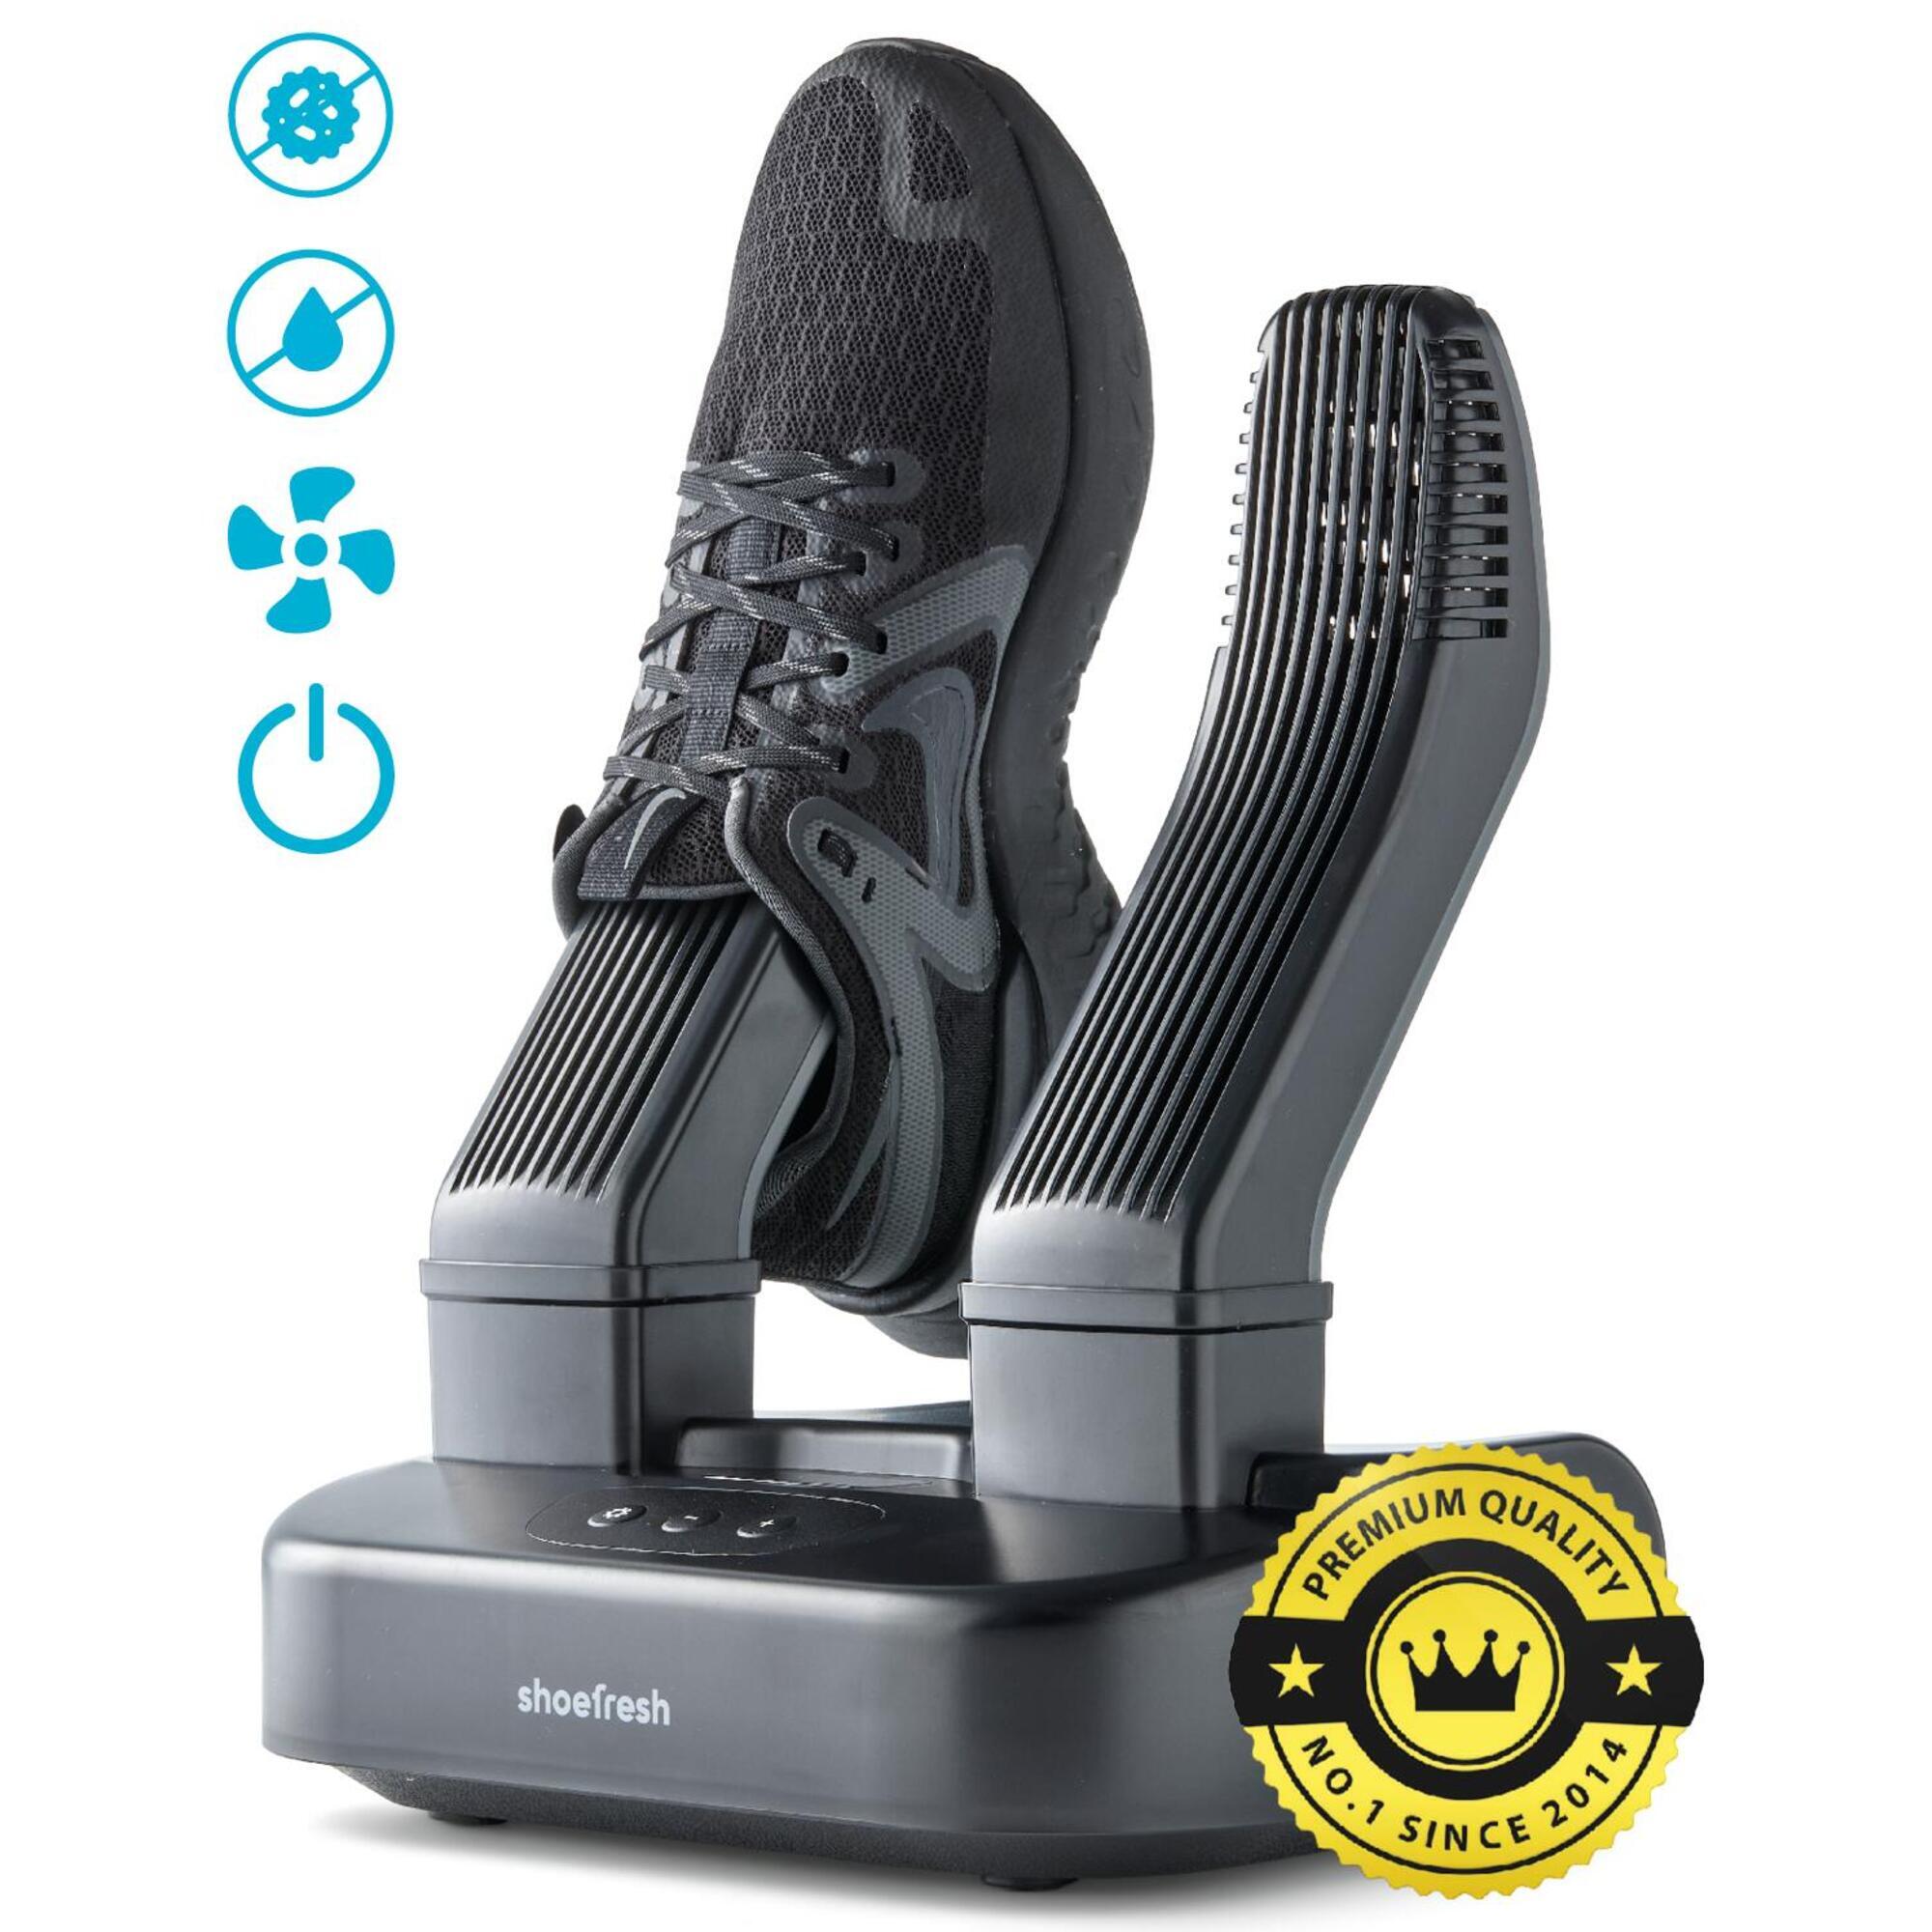 secador de pies portátil eléctrico para eliminar el mal olor y desinfectar calefacción nuclear doble Lutateo Secador de zapatos secador de pies secador de zapatos secador de botas 